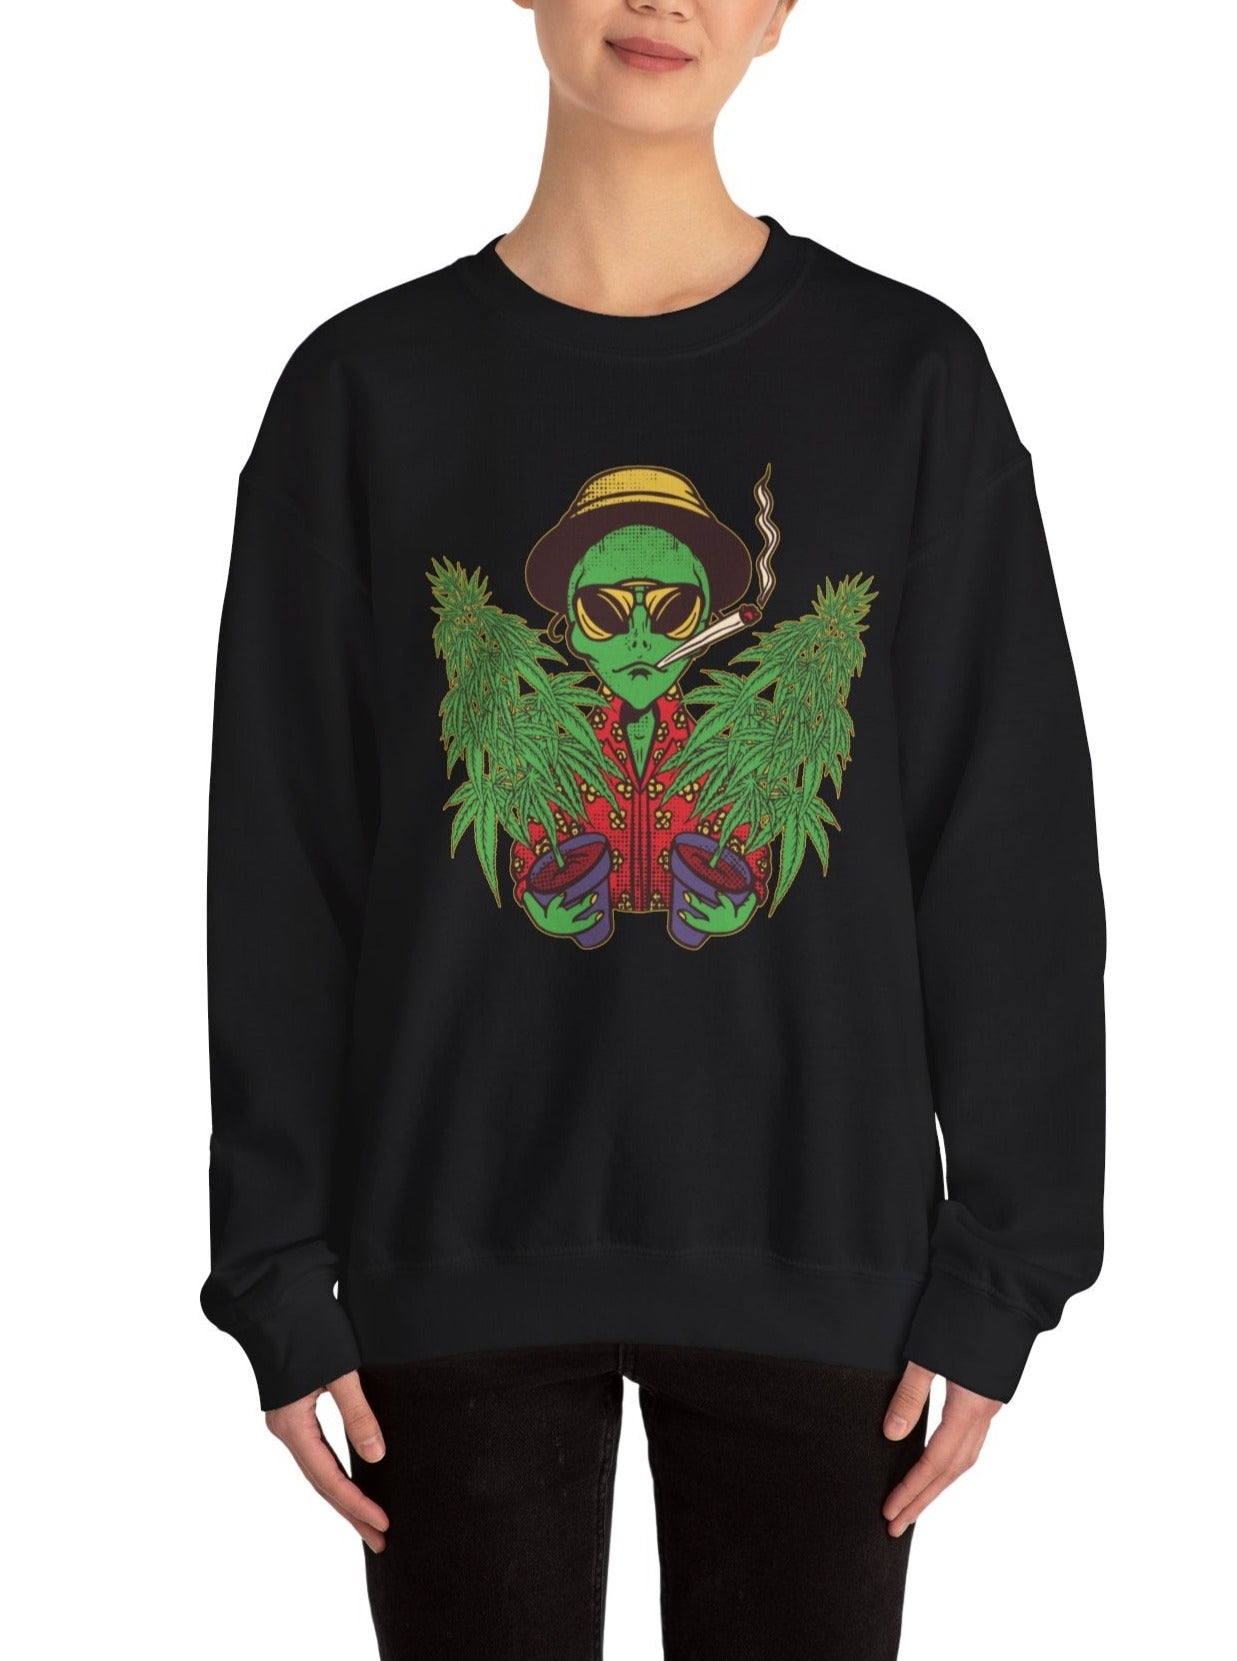 Weed  And Aliens In Las Vegas unisex sweatshirt